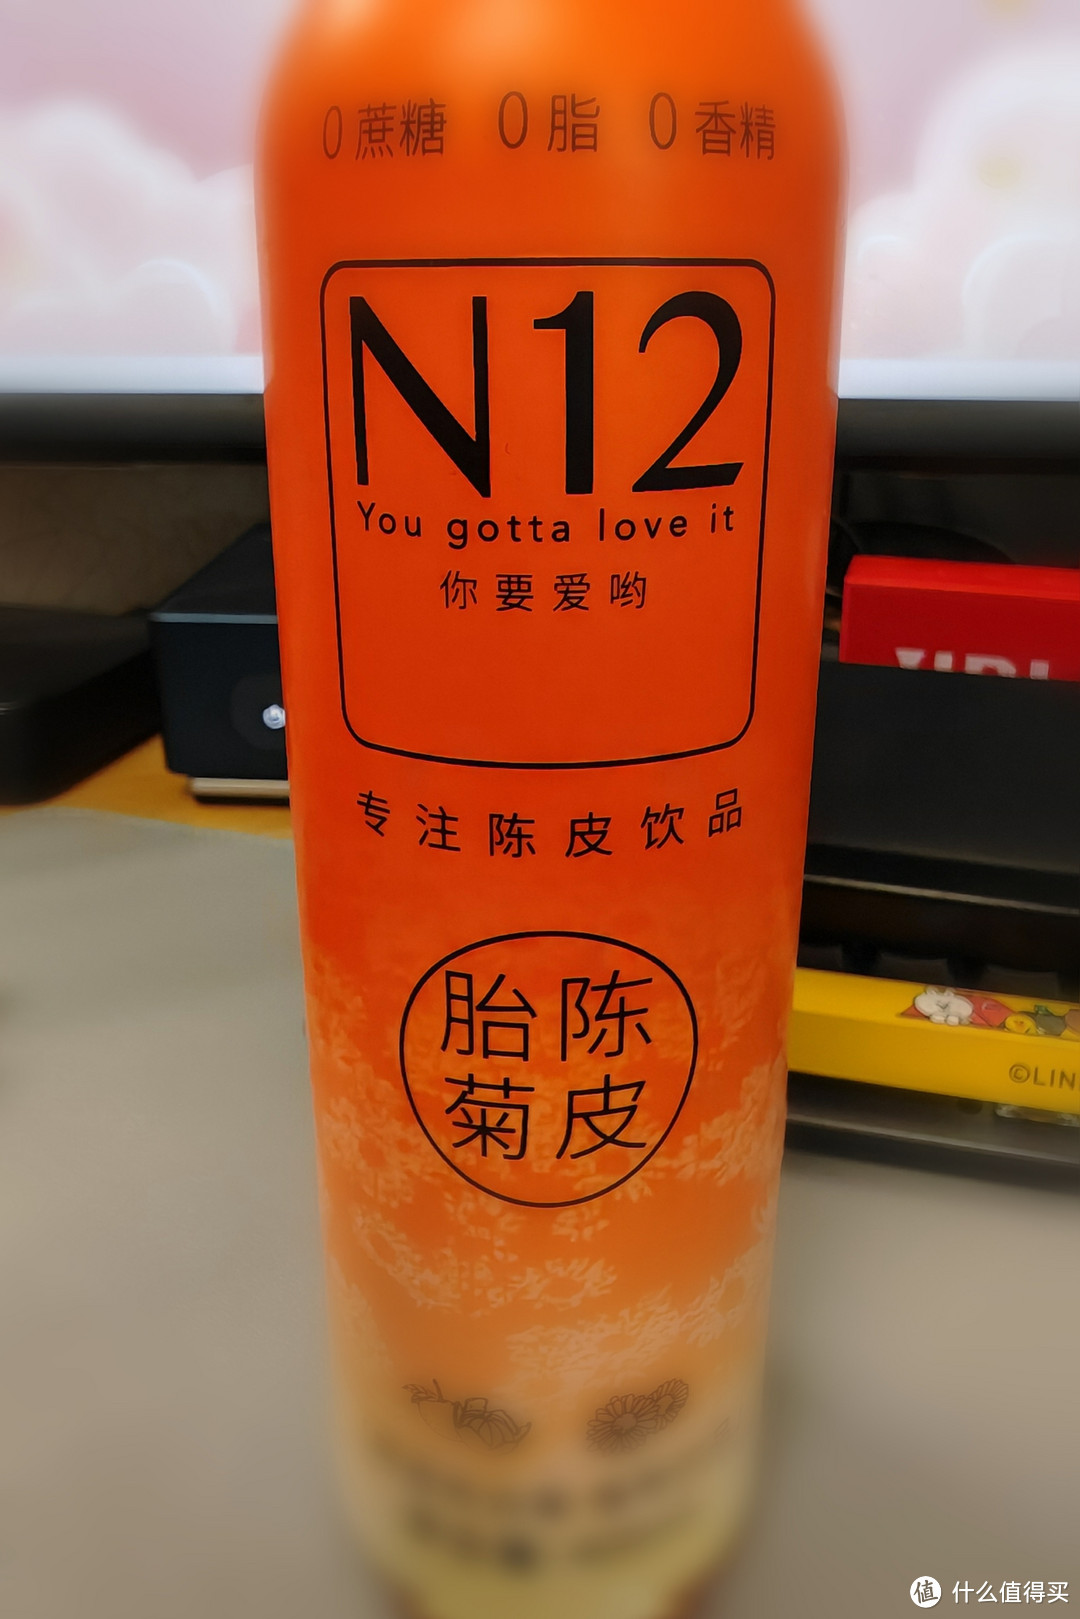 喜欢陈皮类饮料的朋友可以试试这款N12陈皮白菊